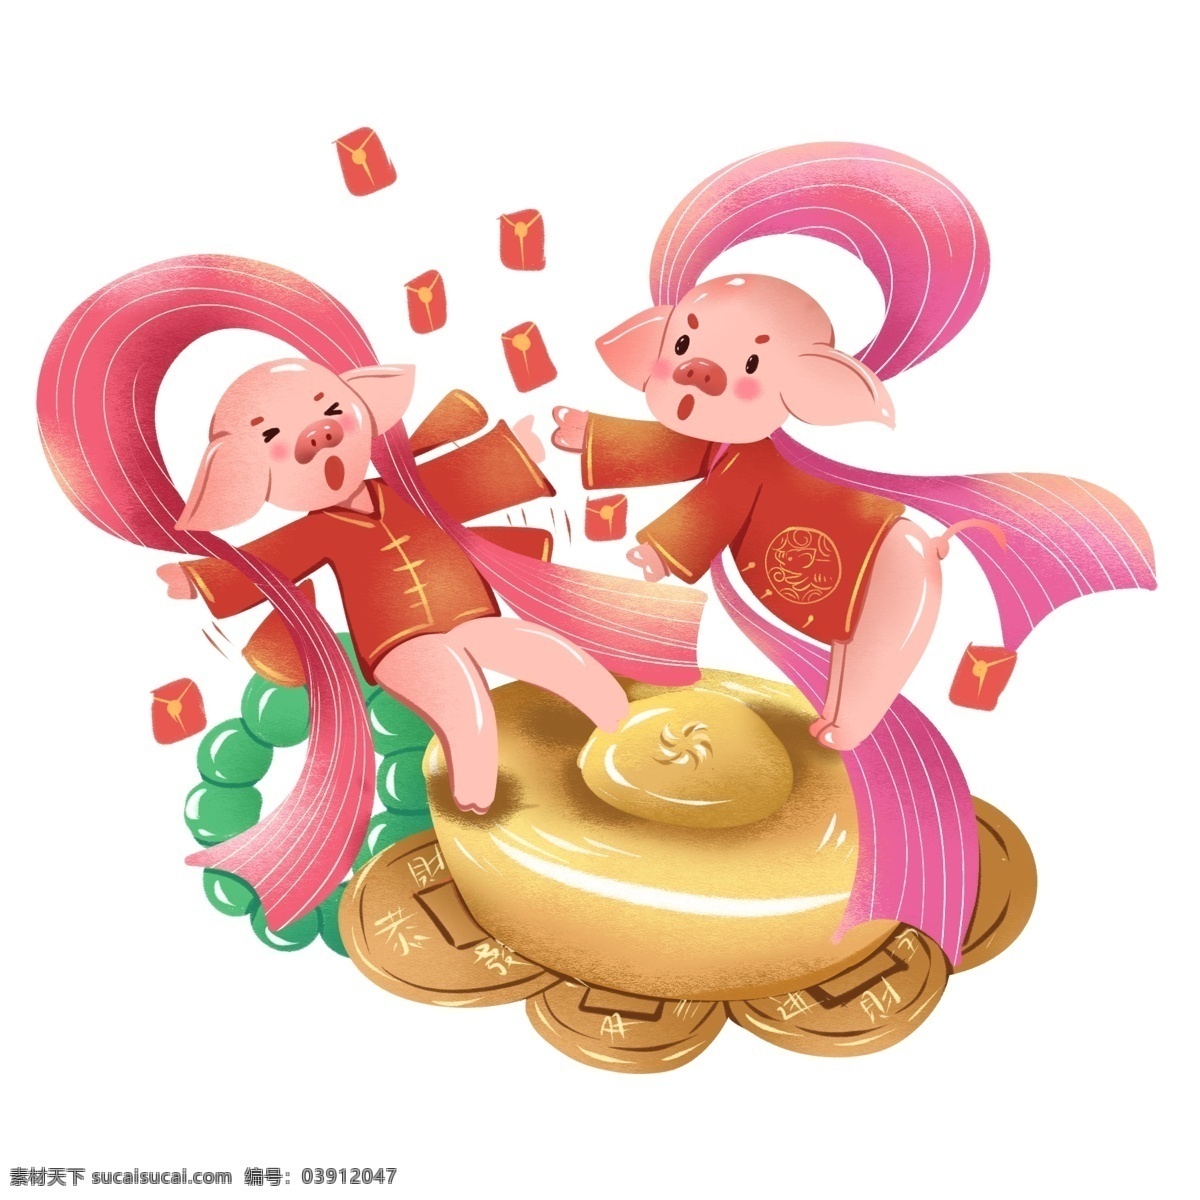 2019 春节 猪年 插画 发财 元素 商用 喜庆 新年 生肖 猪 元宝